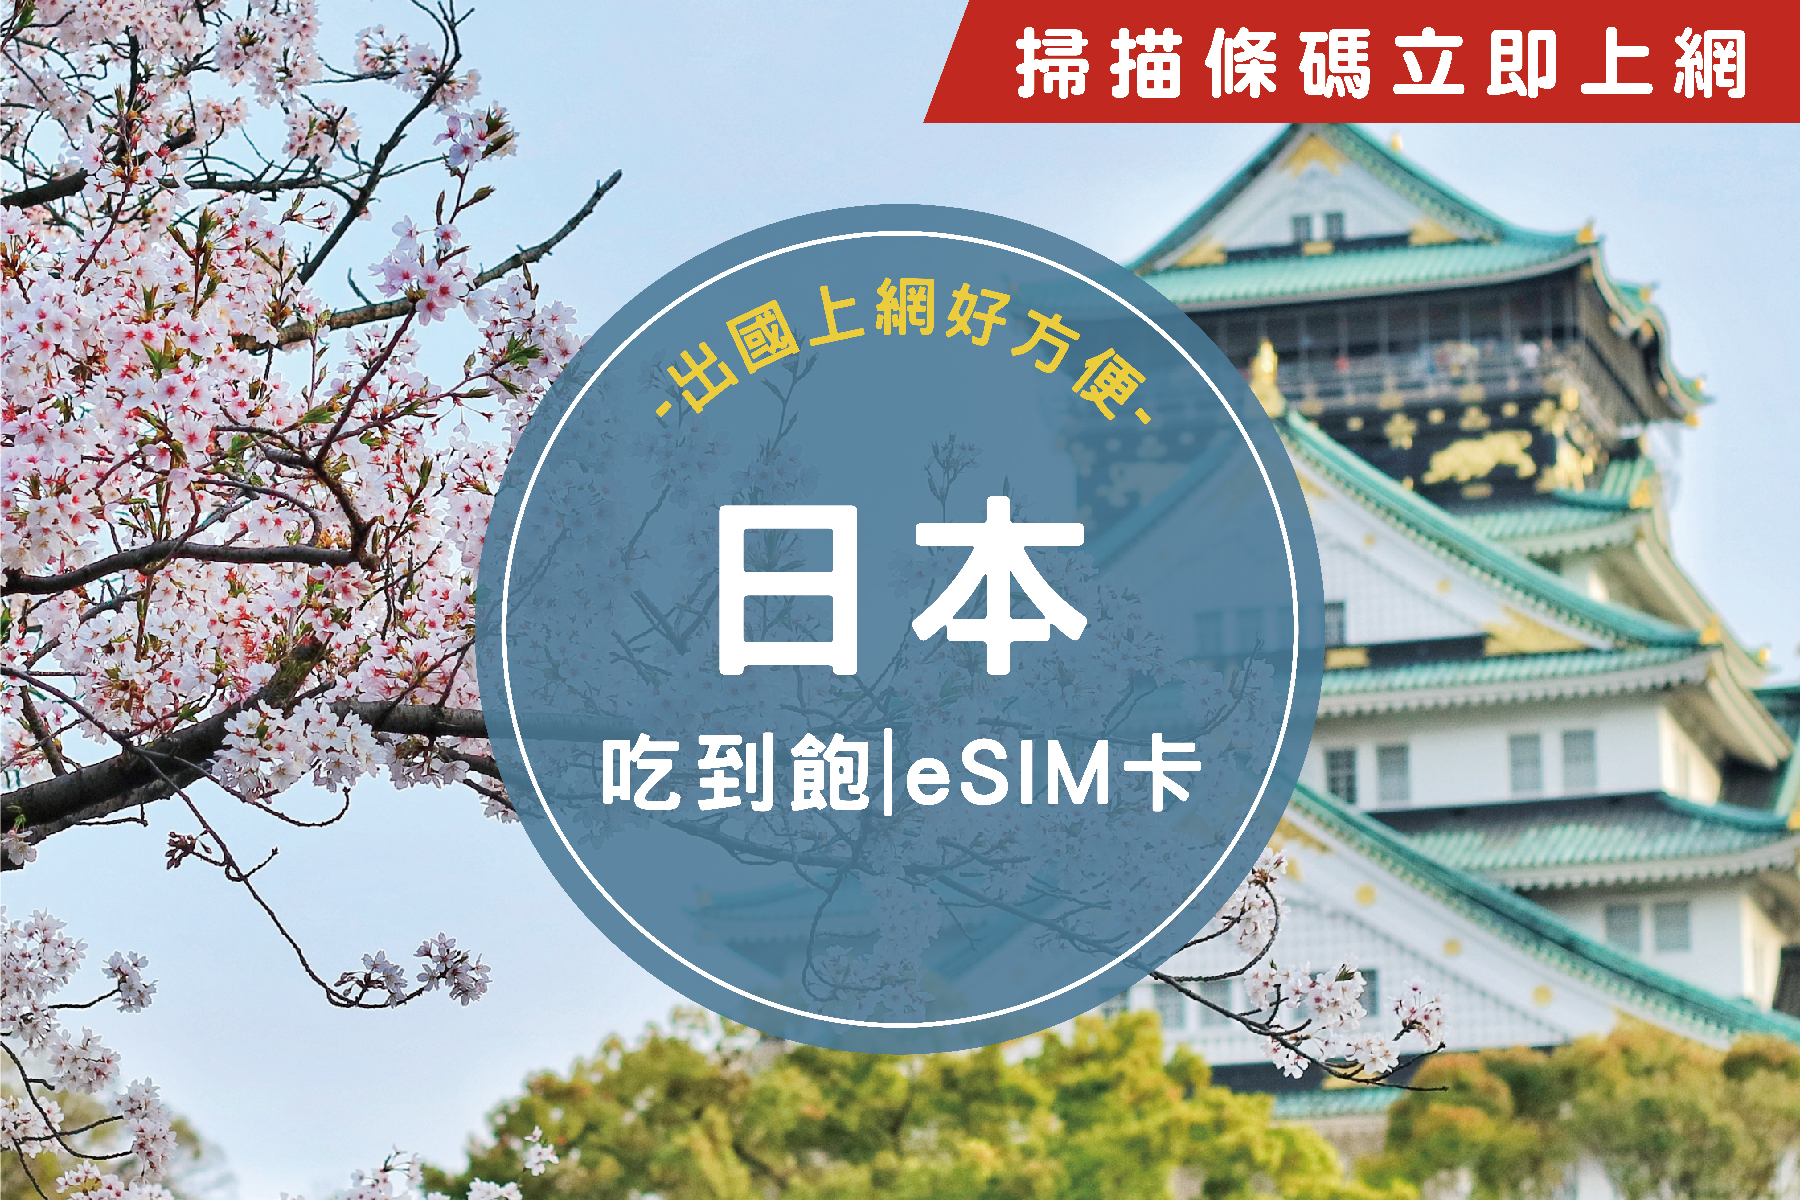 【限時優惠】eSIM日本4天吃到飽不降速上網卡1